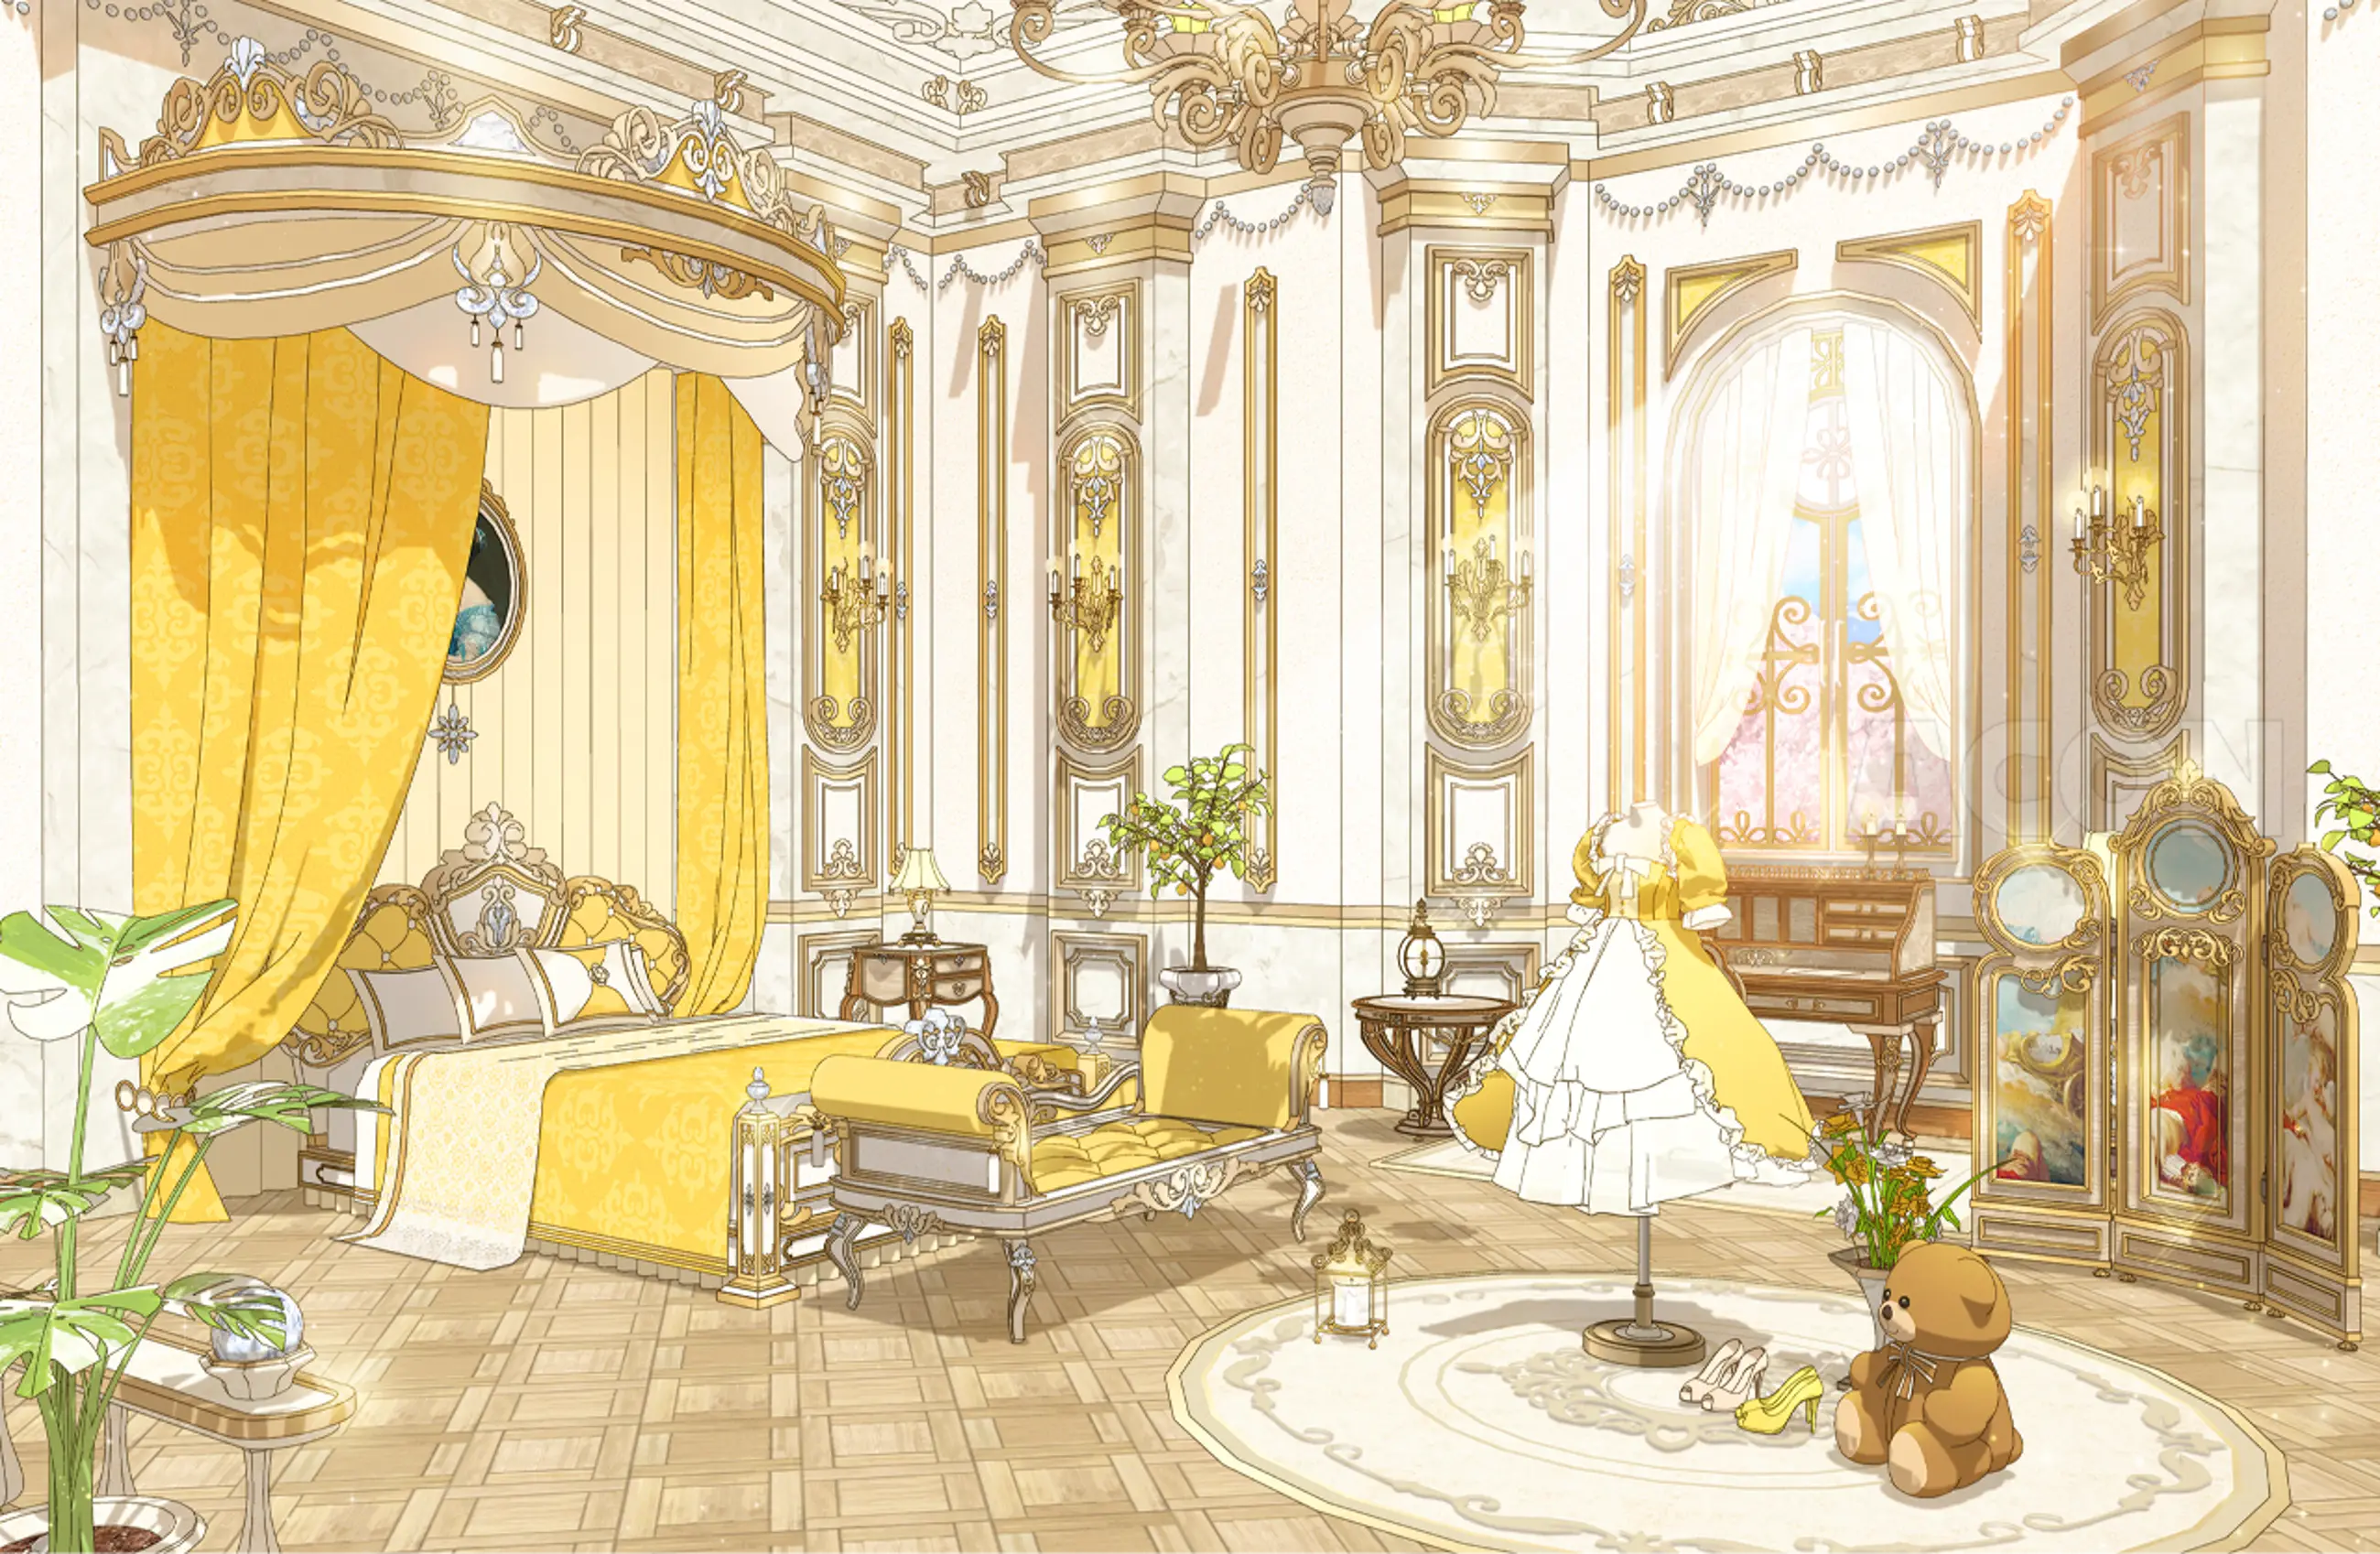 royal prince bedroom